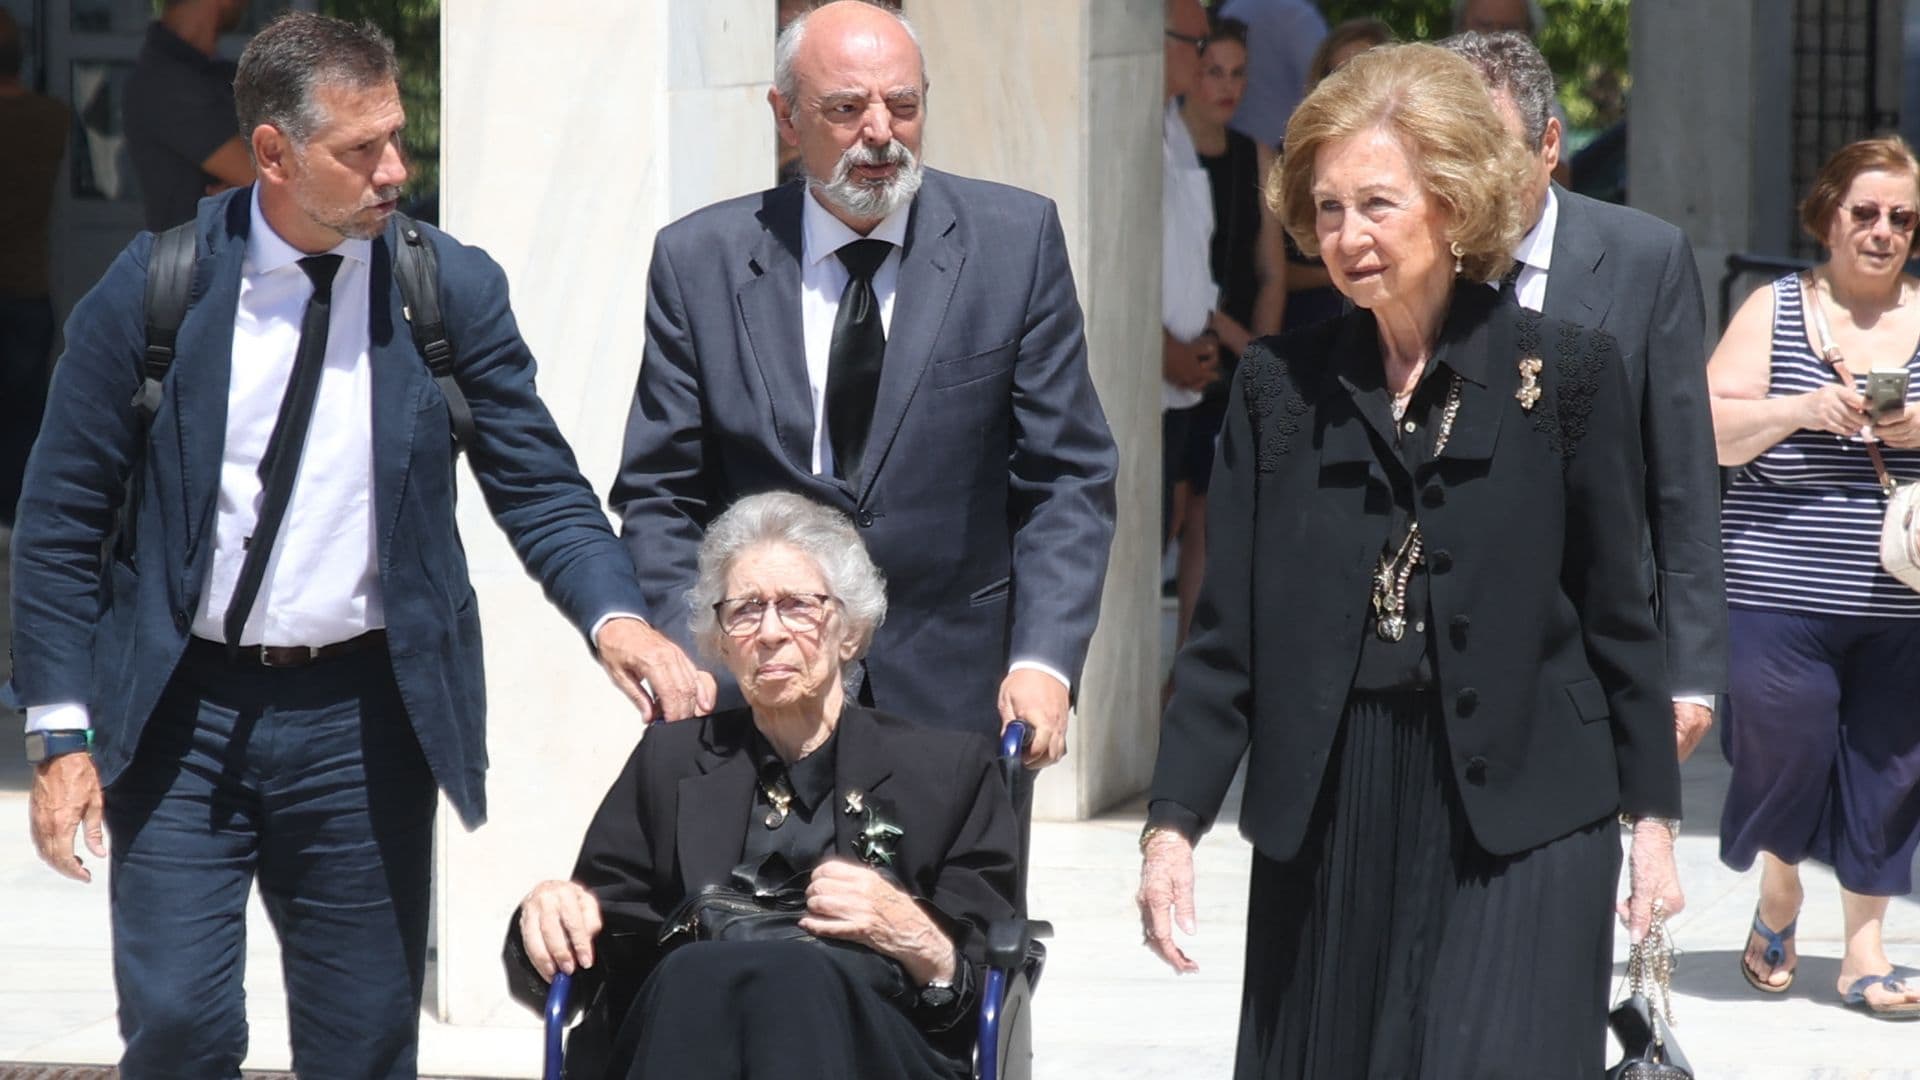 La reina Sofía, arropada por la Familia Real griega, despide a su tío abuelo el príncipe Miguel en un funeral en Atenas